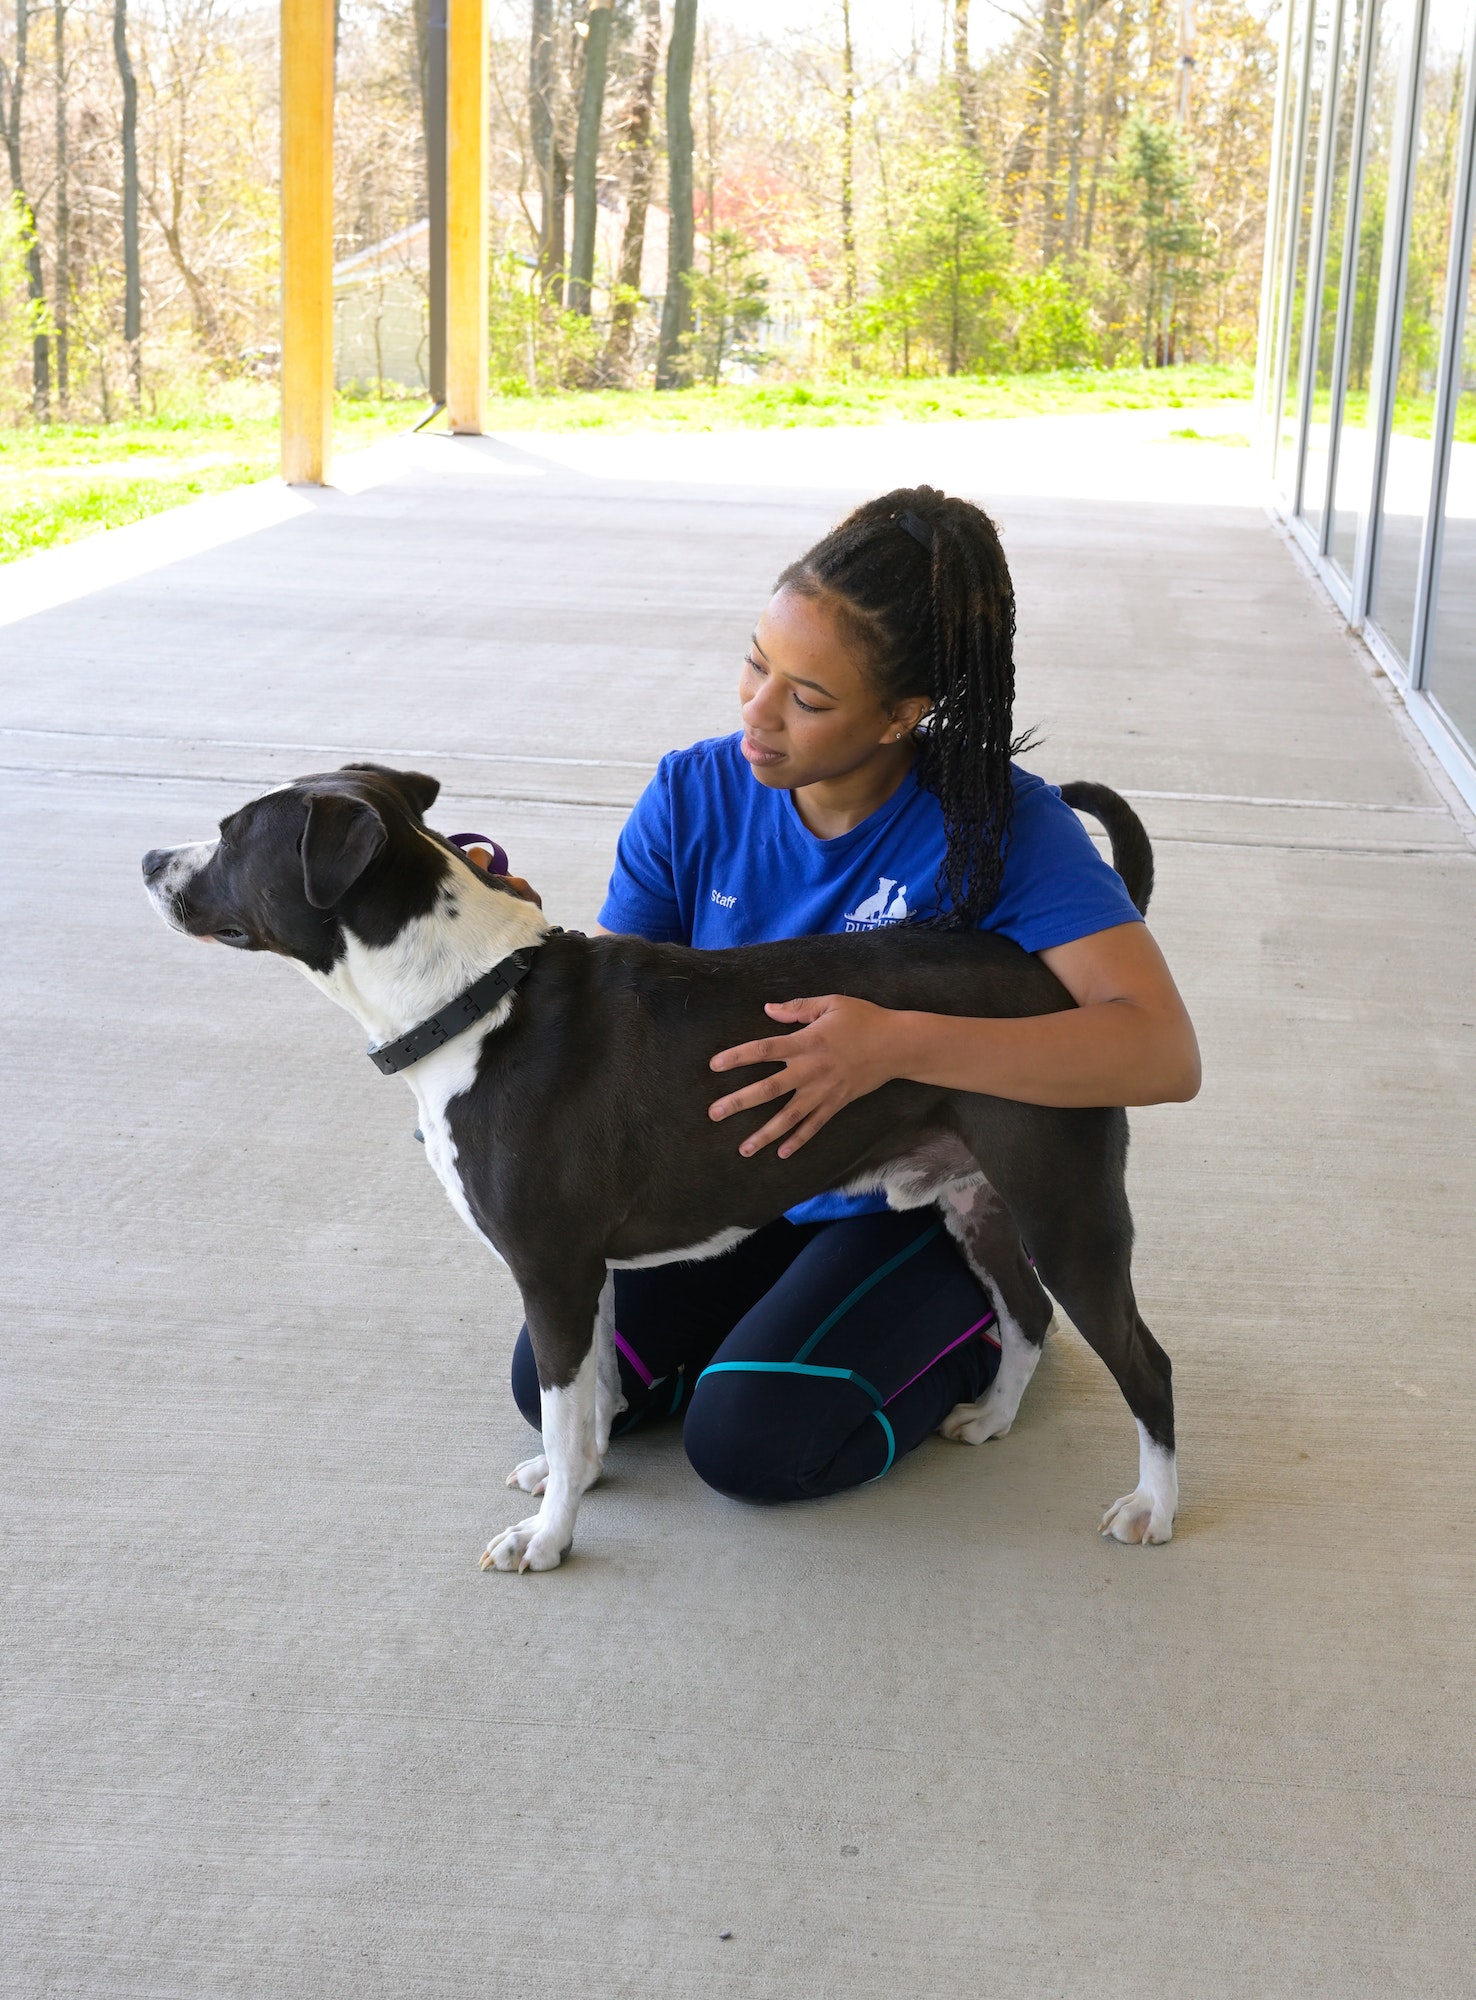 Adopt a shelter dog, Gen Z dog trainer